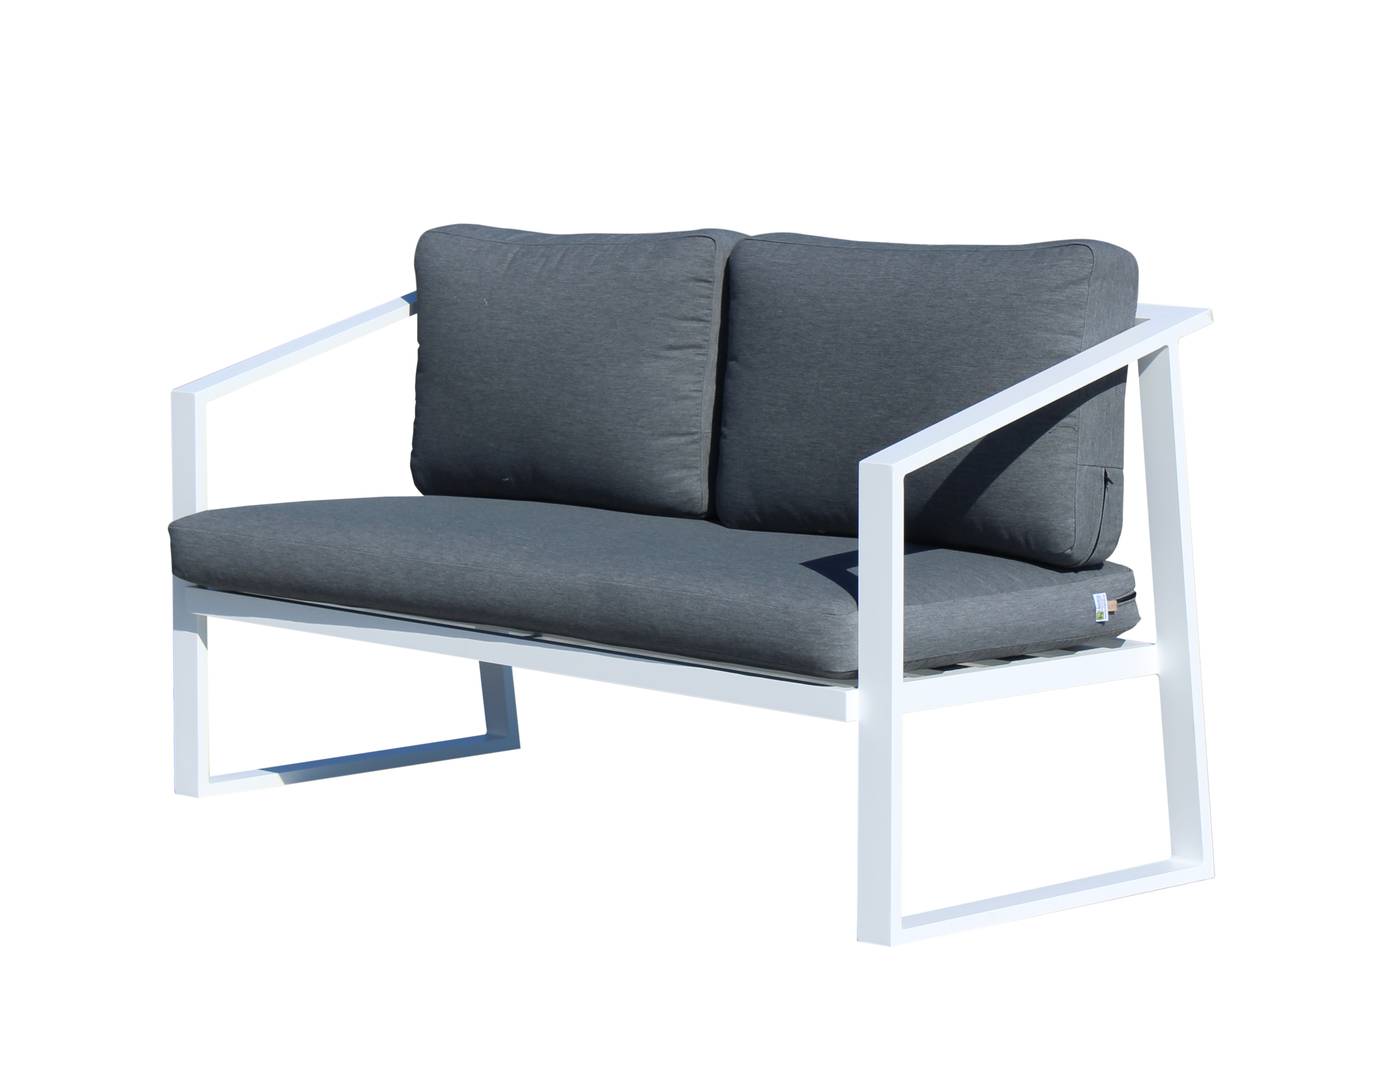 Set Aluminio Sadem-7 - Conjunto aluminio para exterior: sofá 2 plazas + 2 sillones + mesa de centro. Fabricado de aluminio en color blanco o antracita.